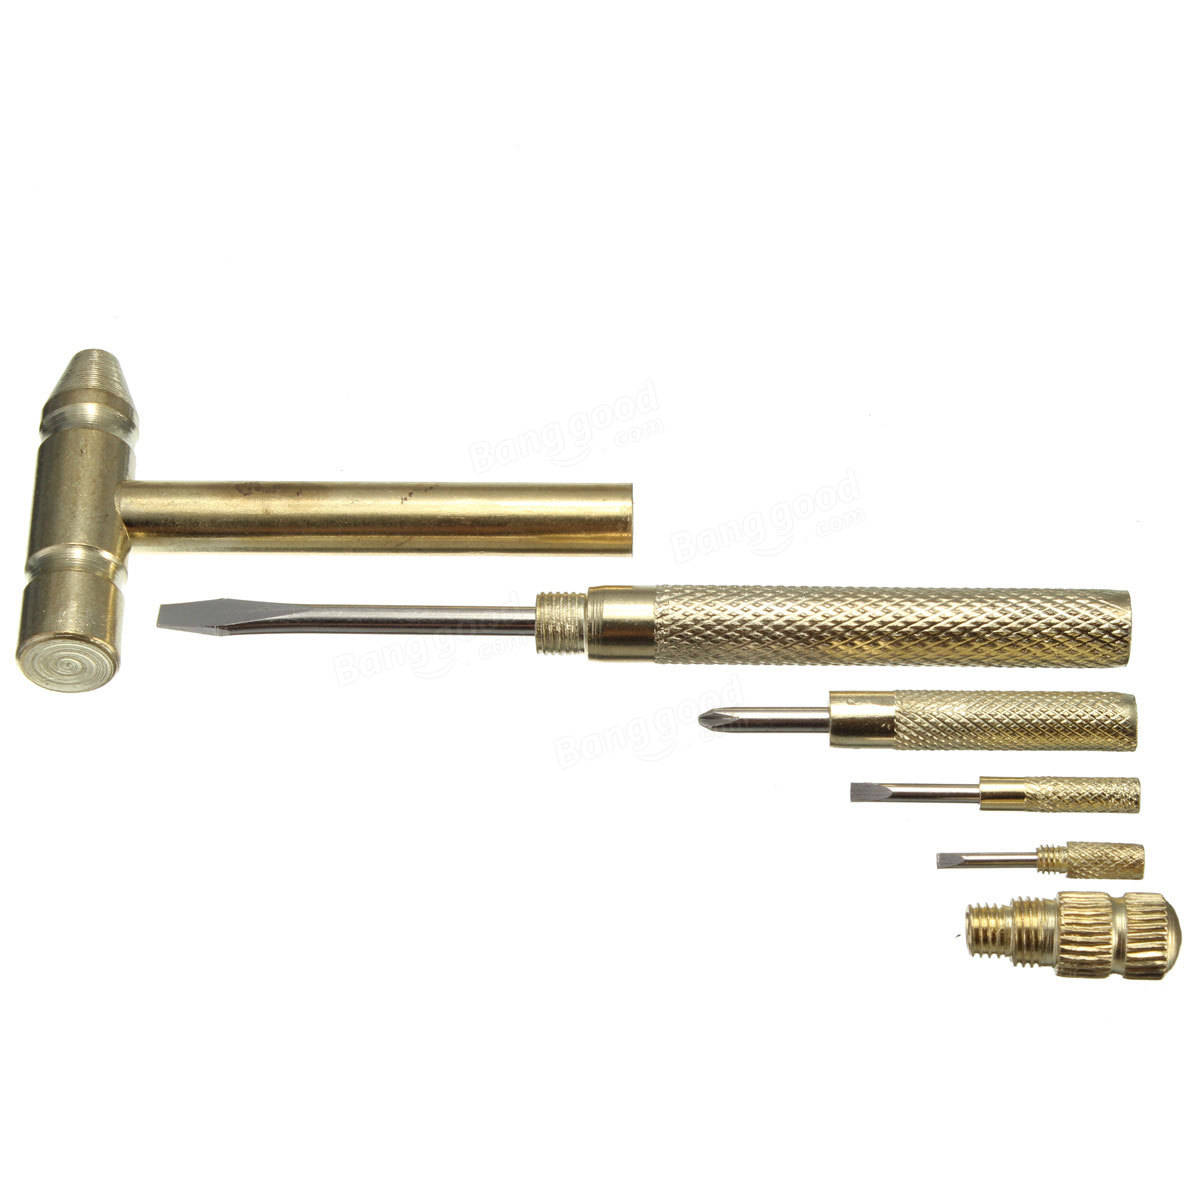 Micro Mini Copper Hammer Portable 4 Kinds Models Screwdrivers DIY Tools 